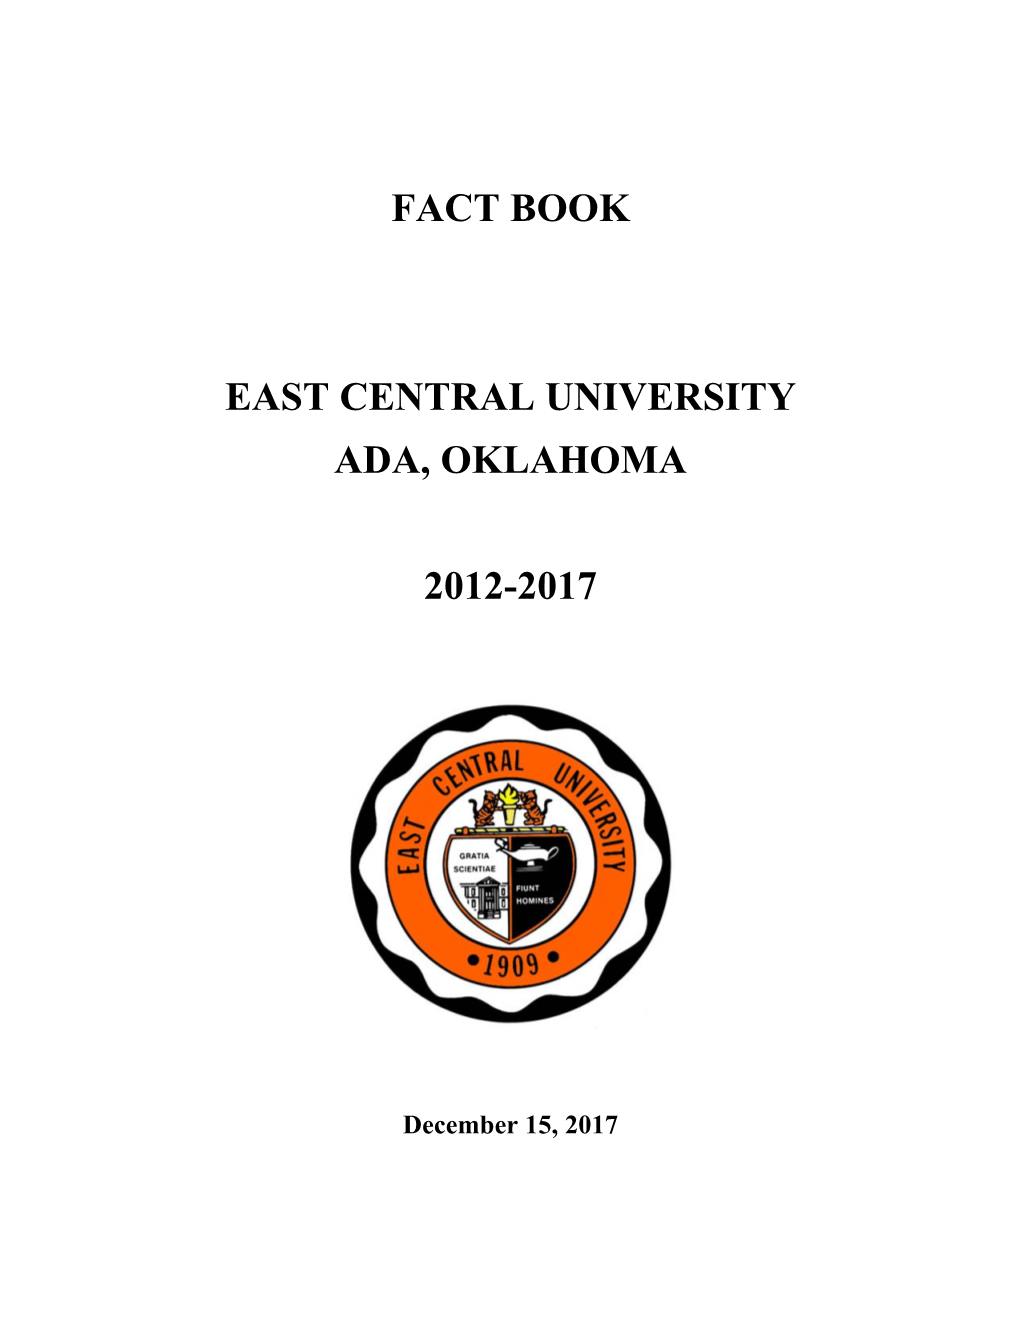 ECU Fact Book 2012-2017